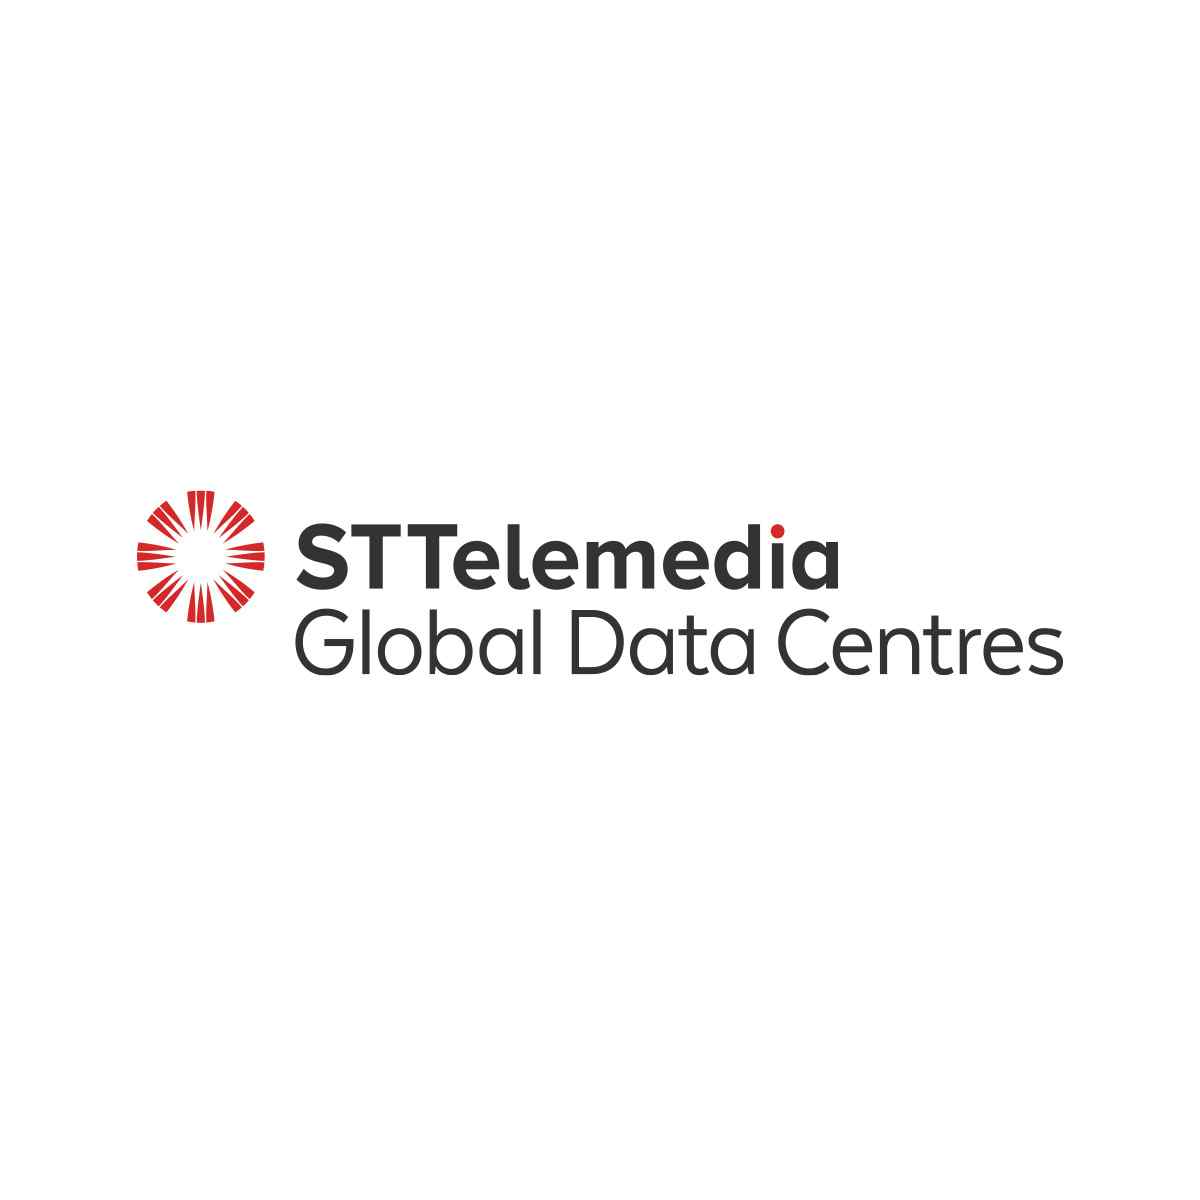 stt-logo-1200x1200.jpg